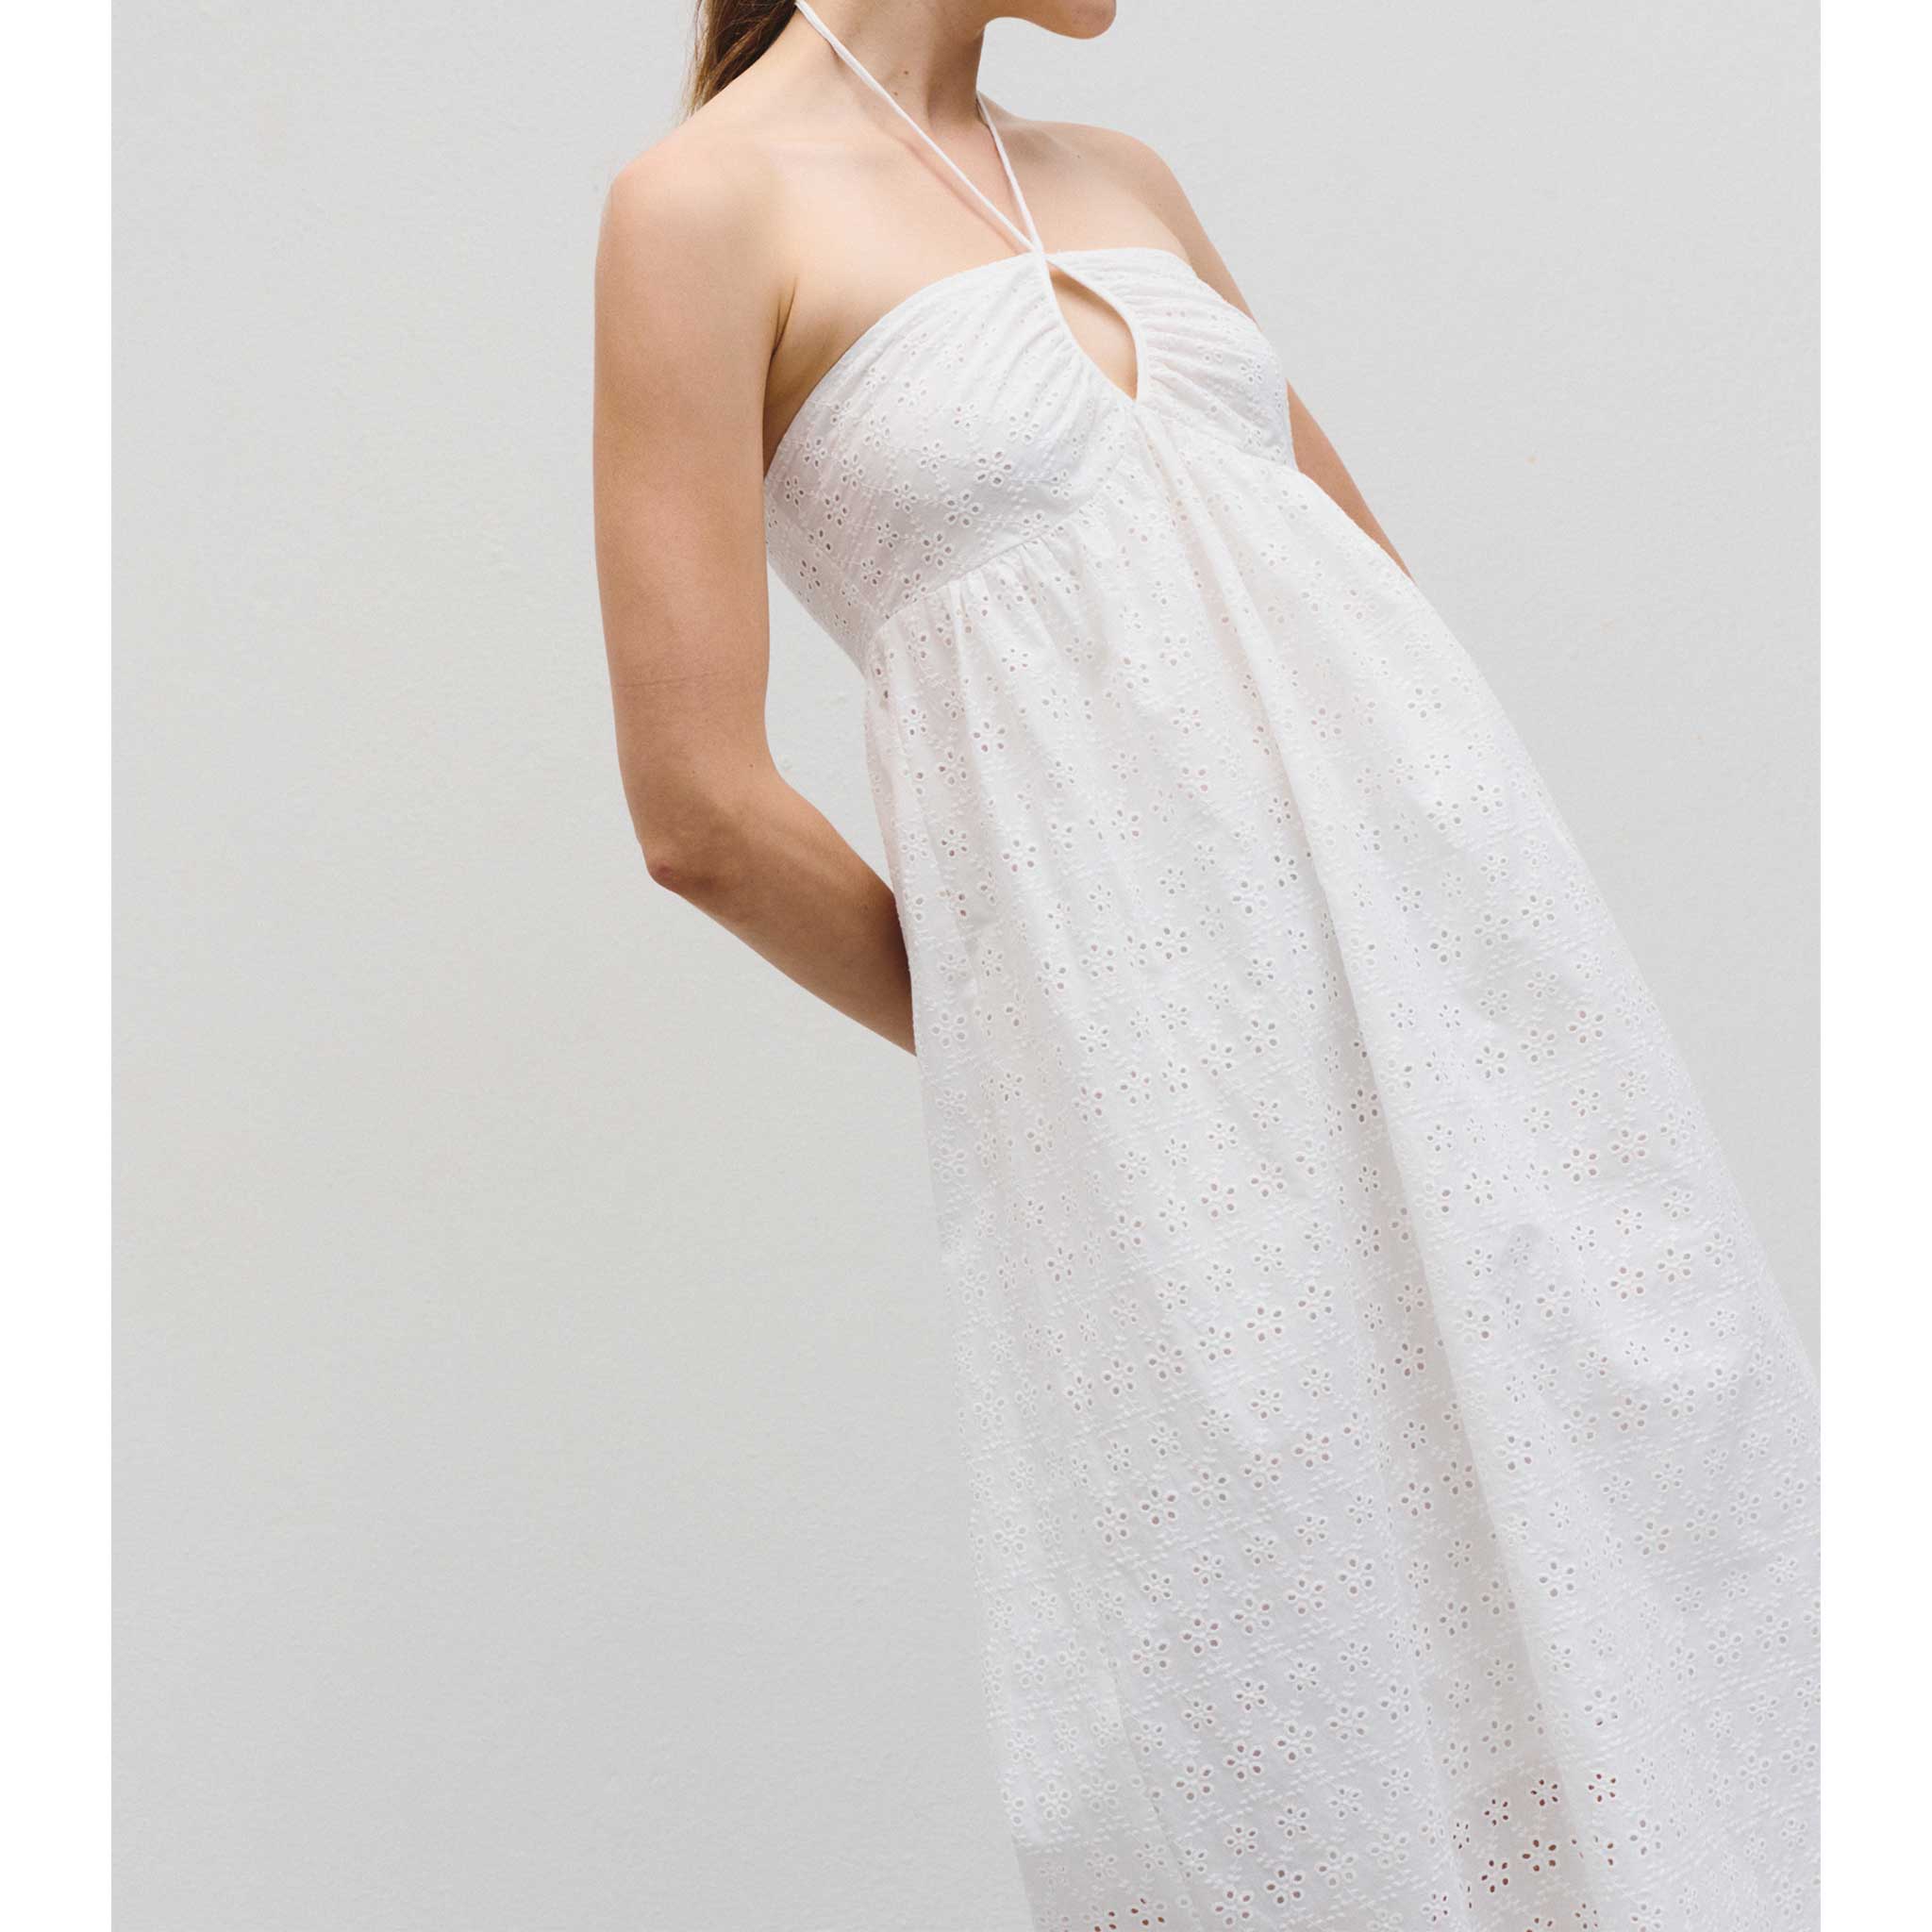 Viviano Dress in White